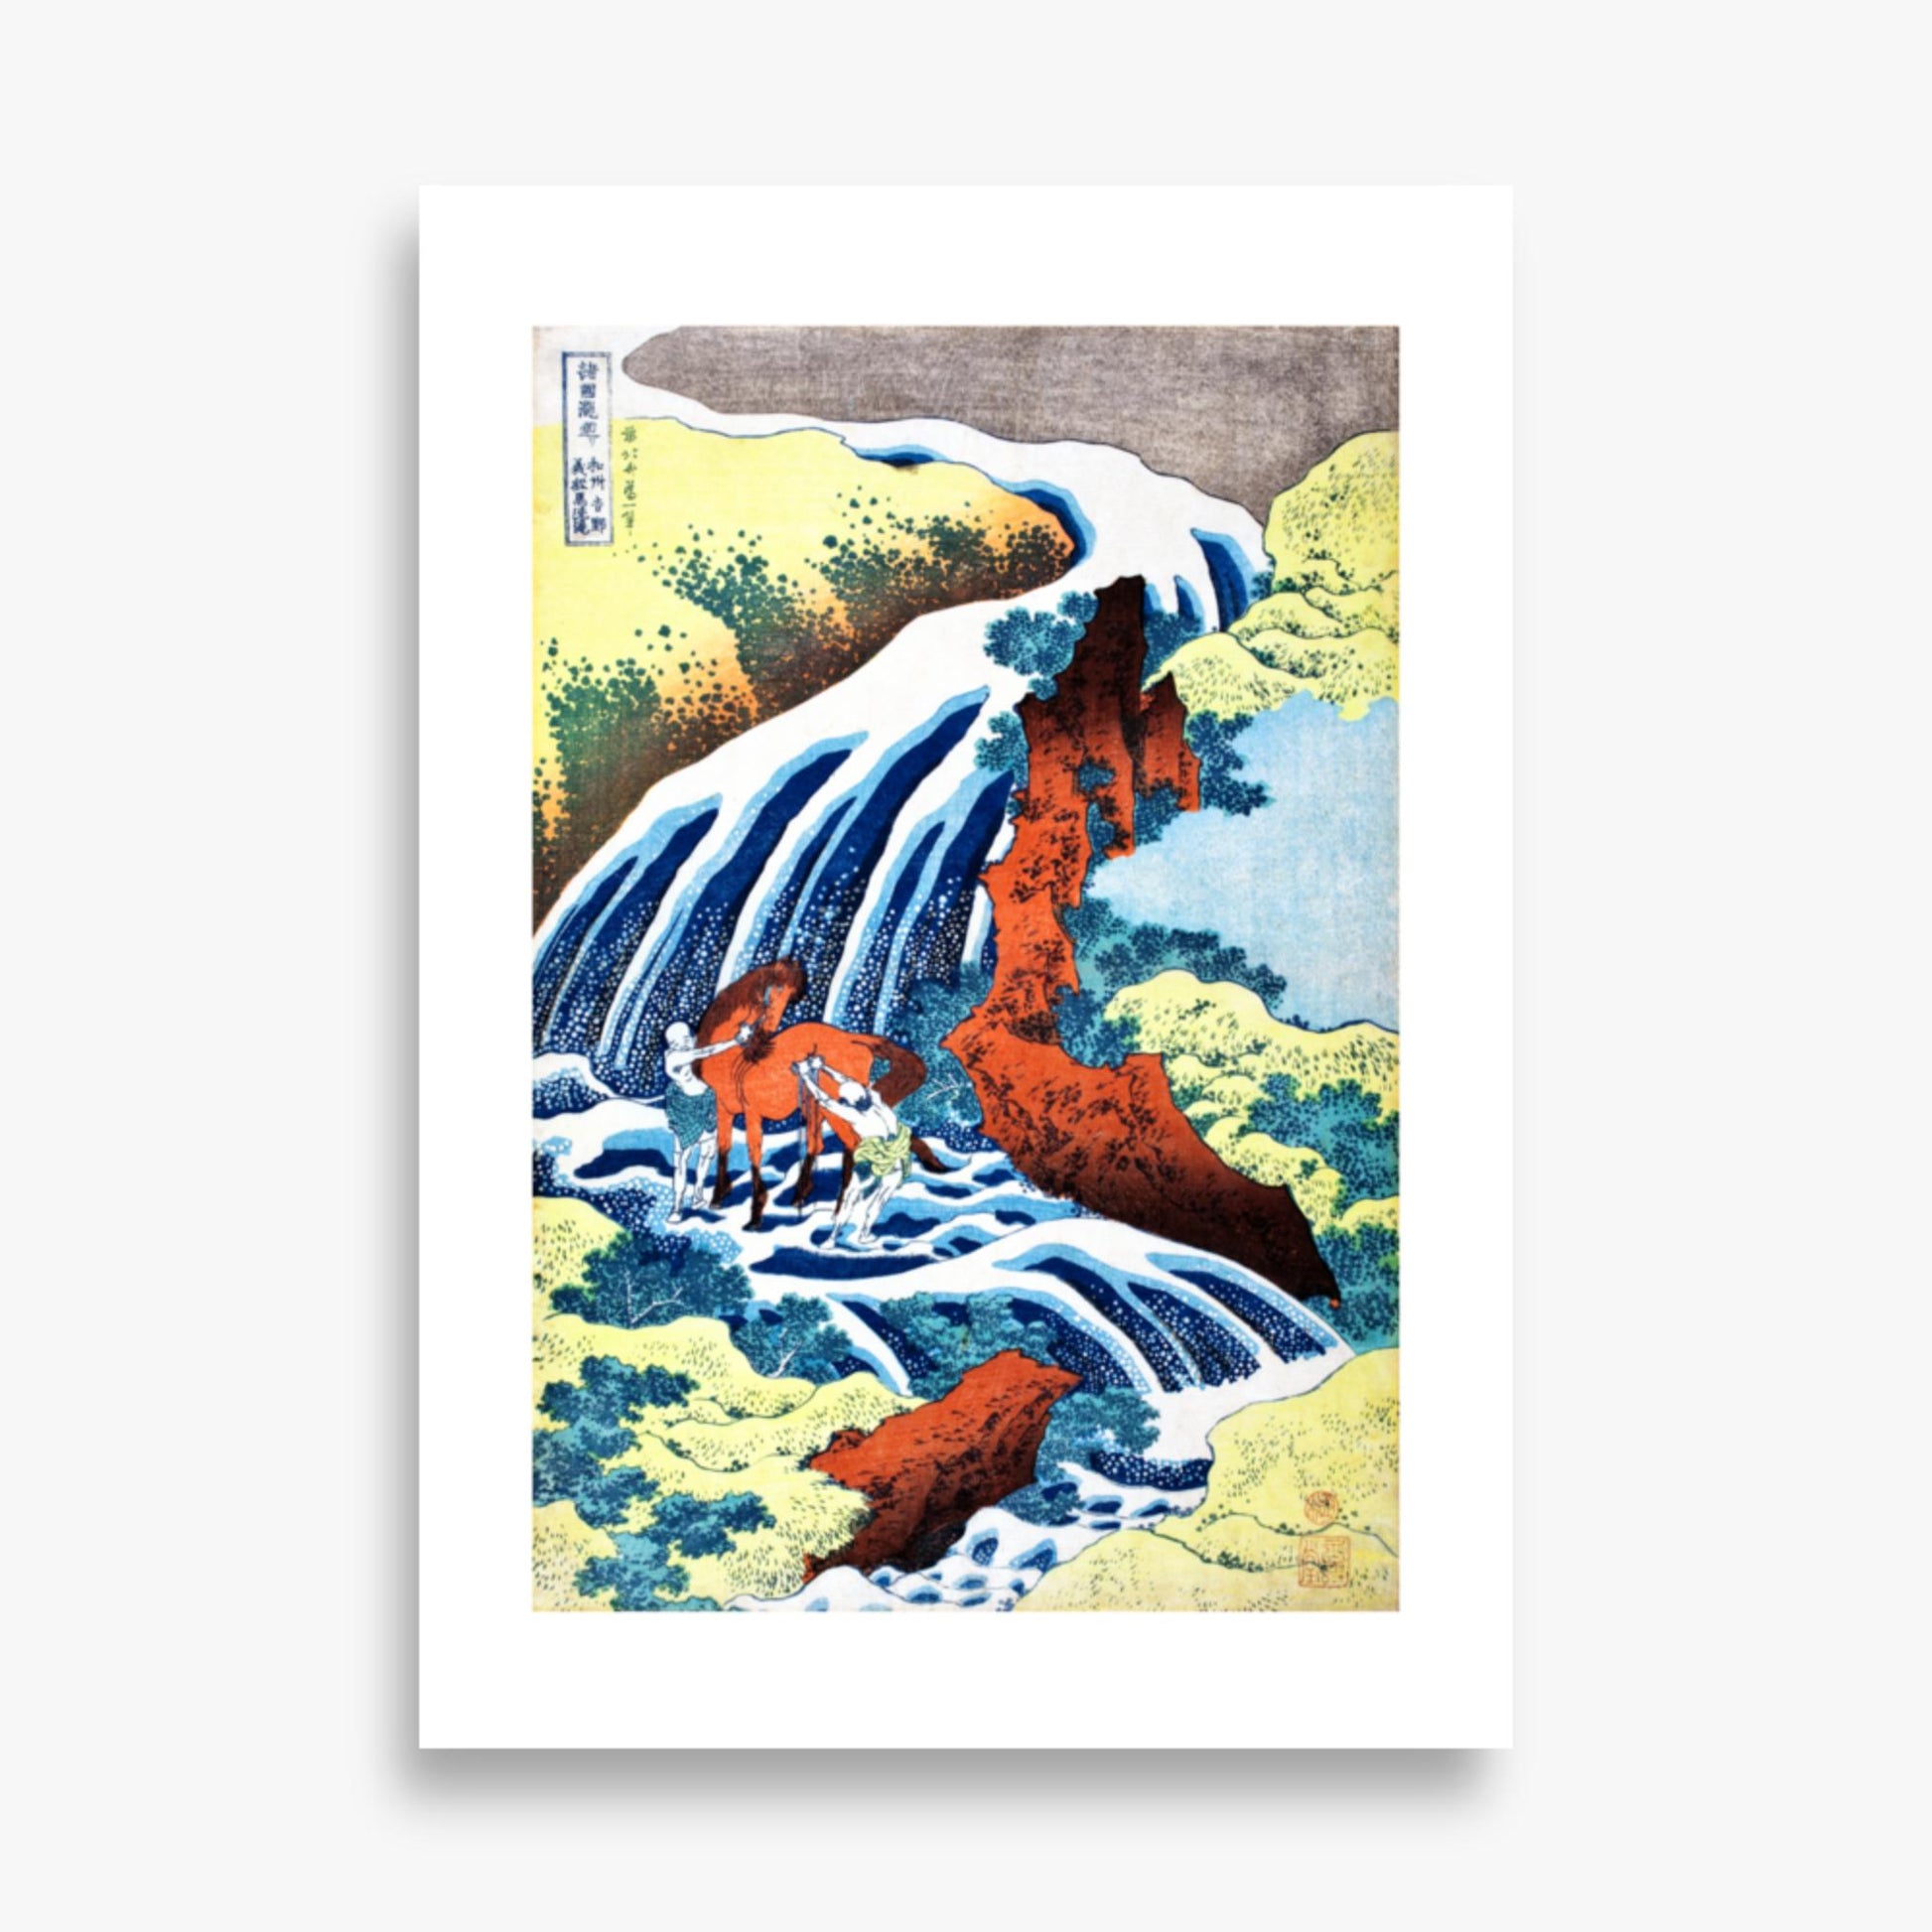 Katsushika Hokusai - The Yoshitsune Horse-Washing Falls at Yoshino, Izumi Province 70x100 cm Poster